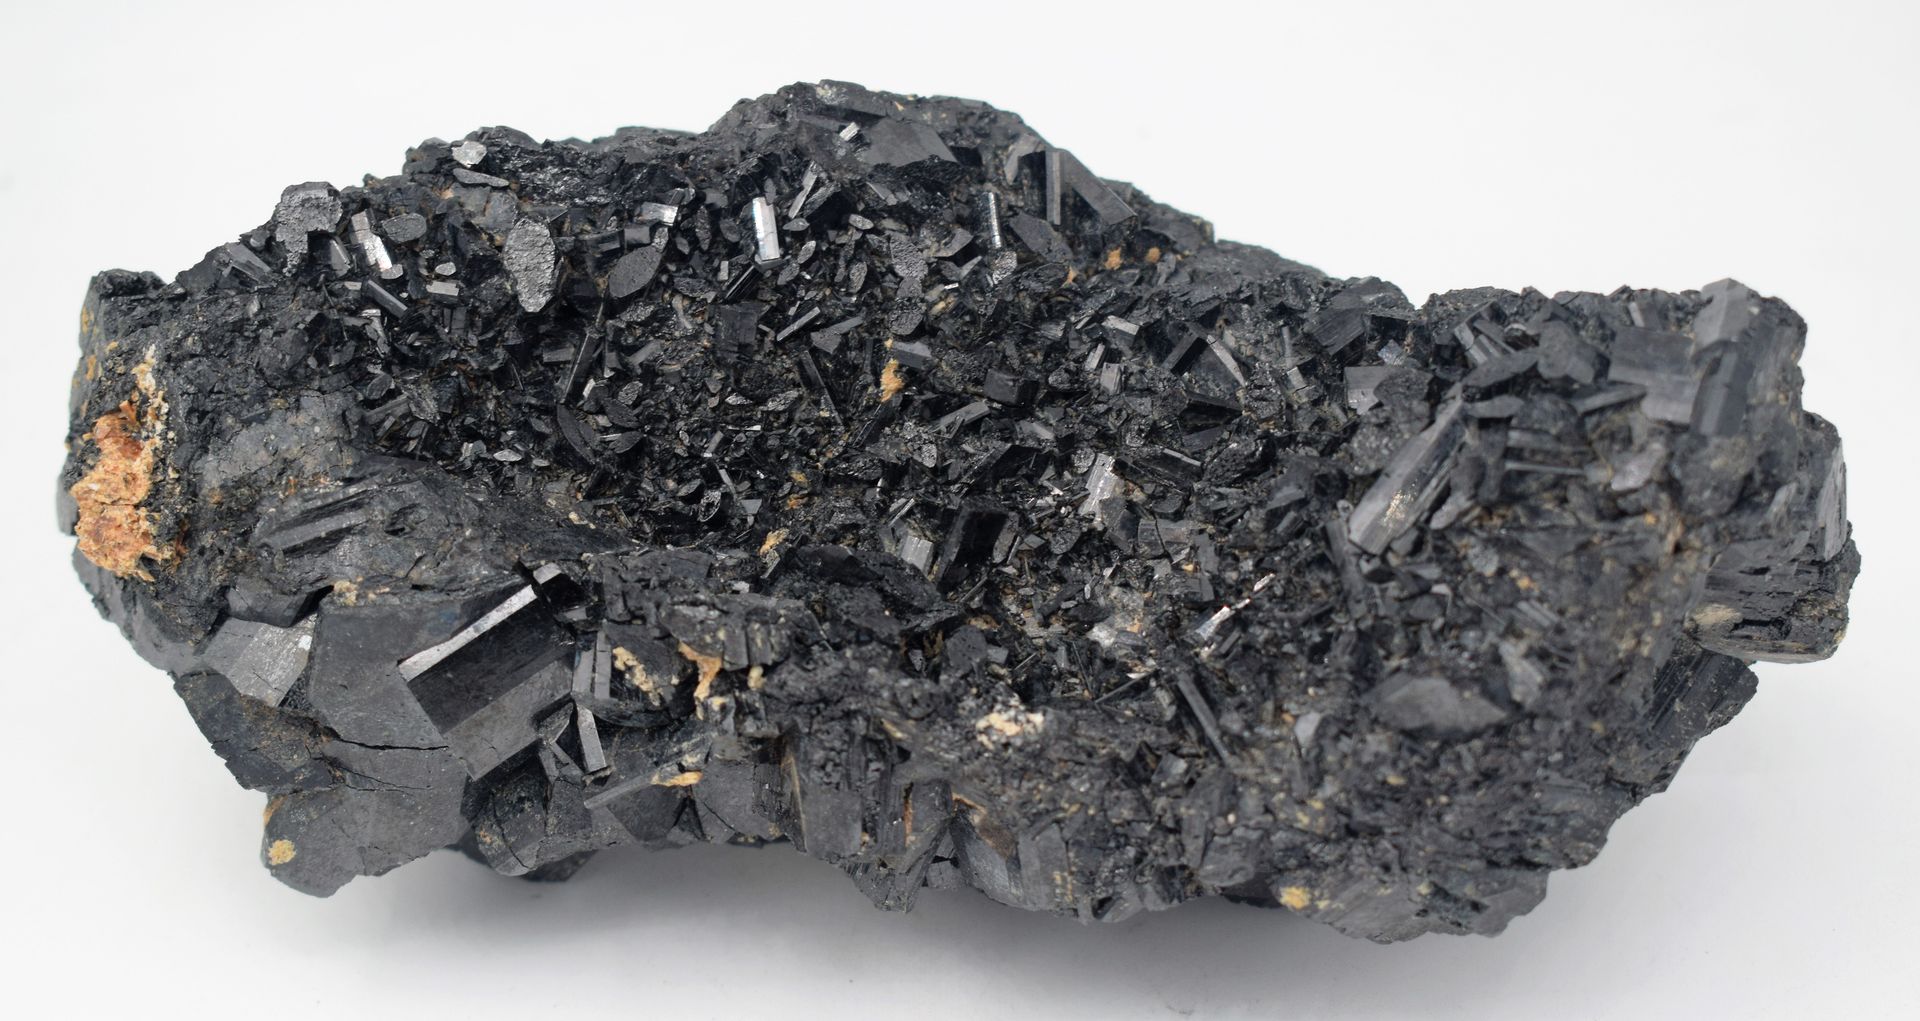 Null (MINERALOGIE) Stein von schwarzer Farbe, 19 cm, Gewicht: 2,431 kg.

|

(MIN&hellip;